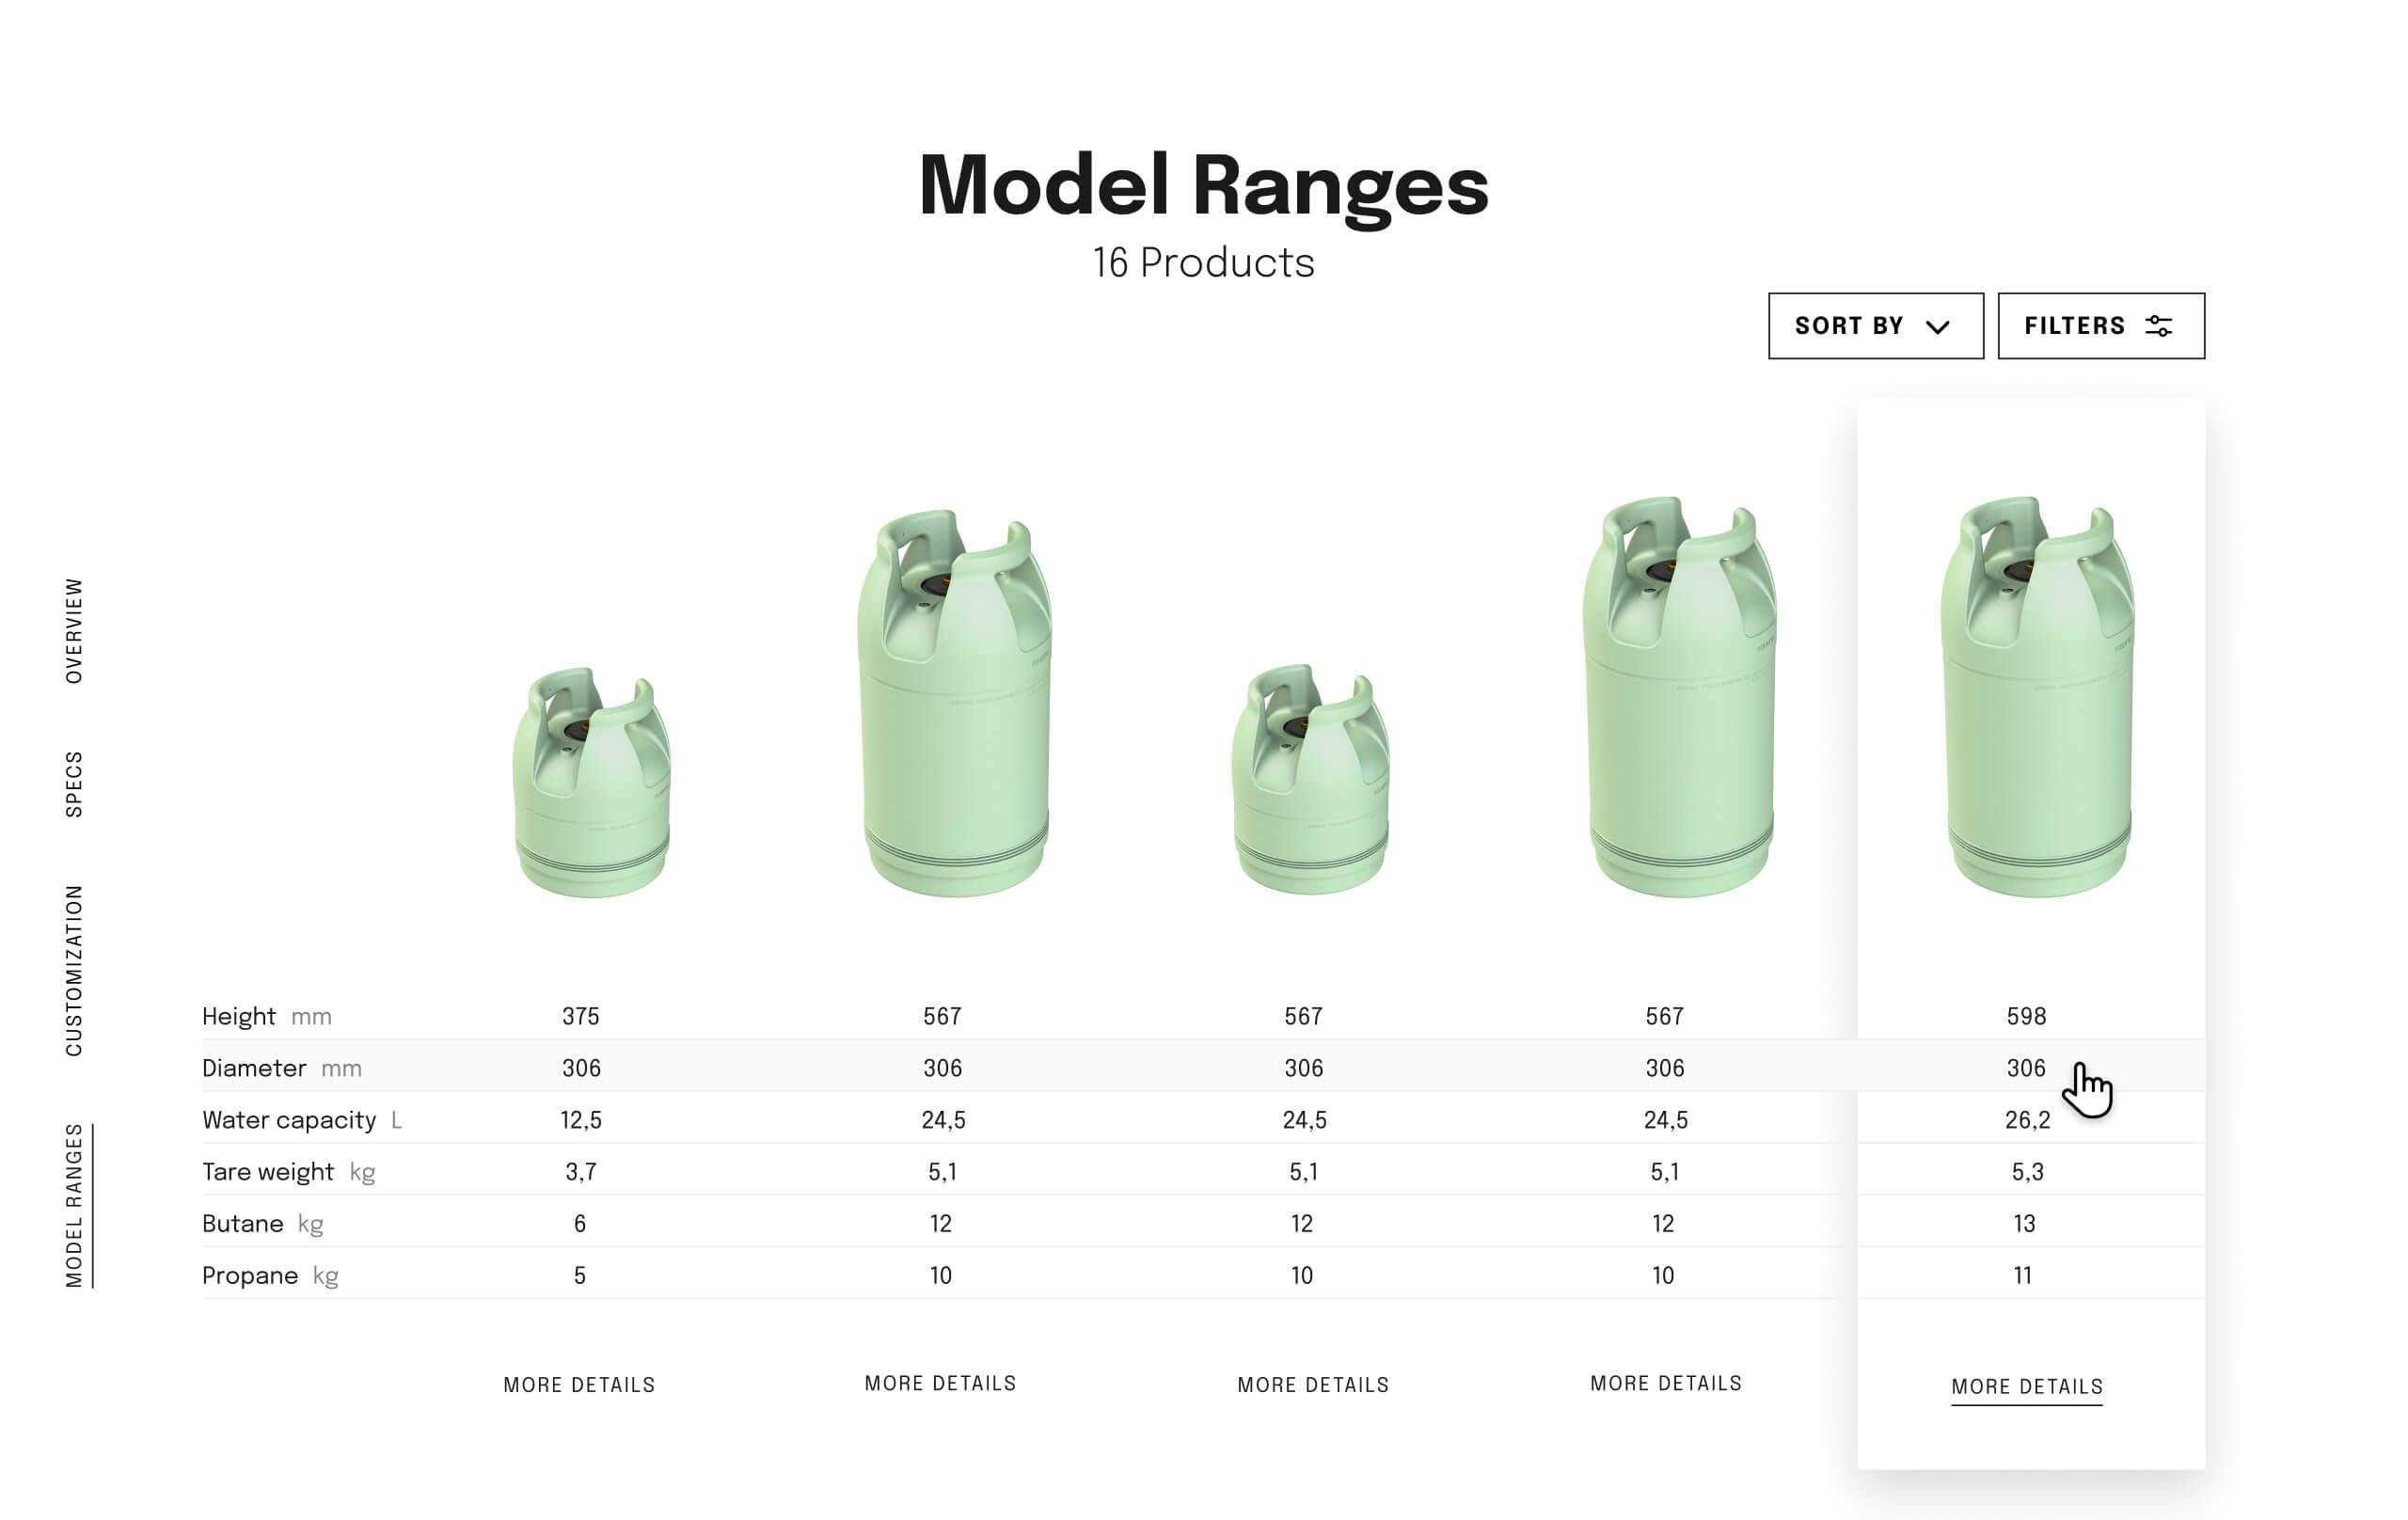 Model ranges